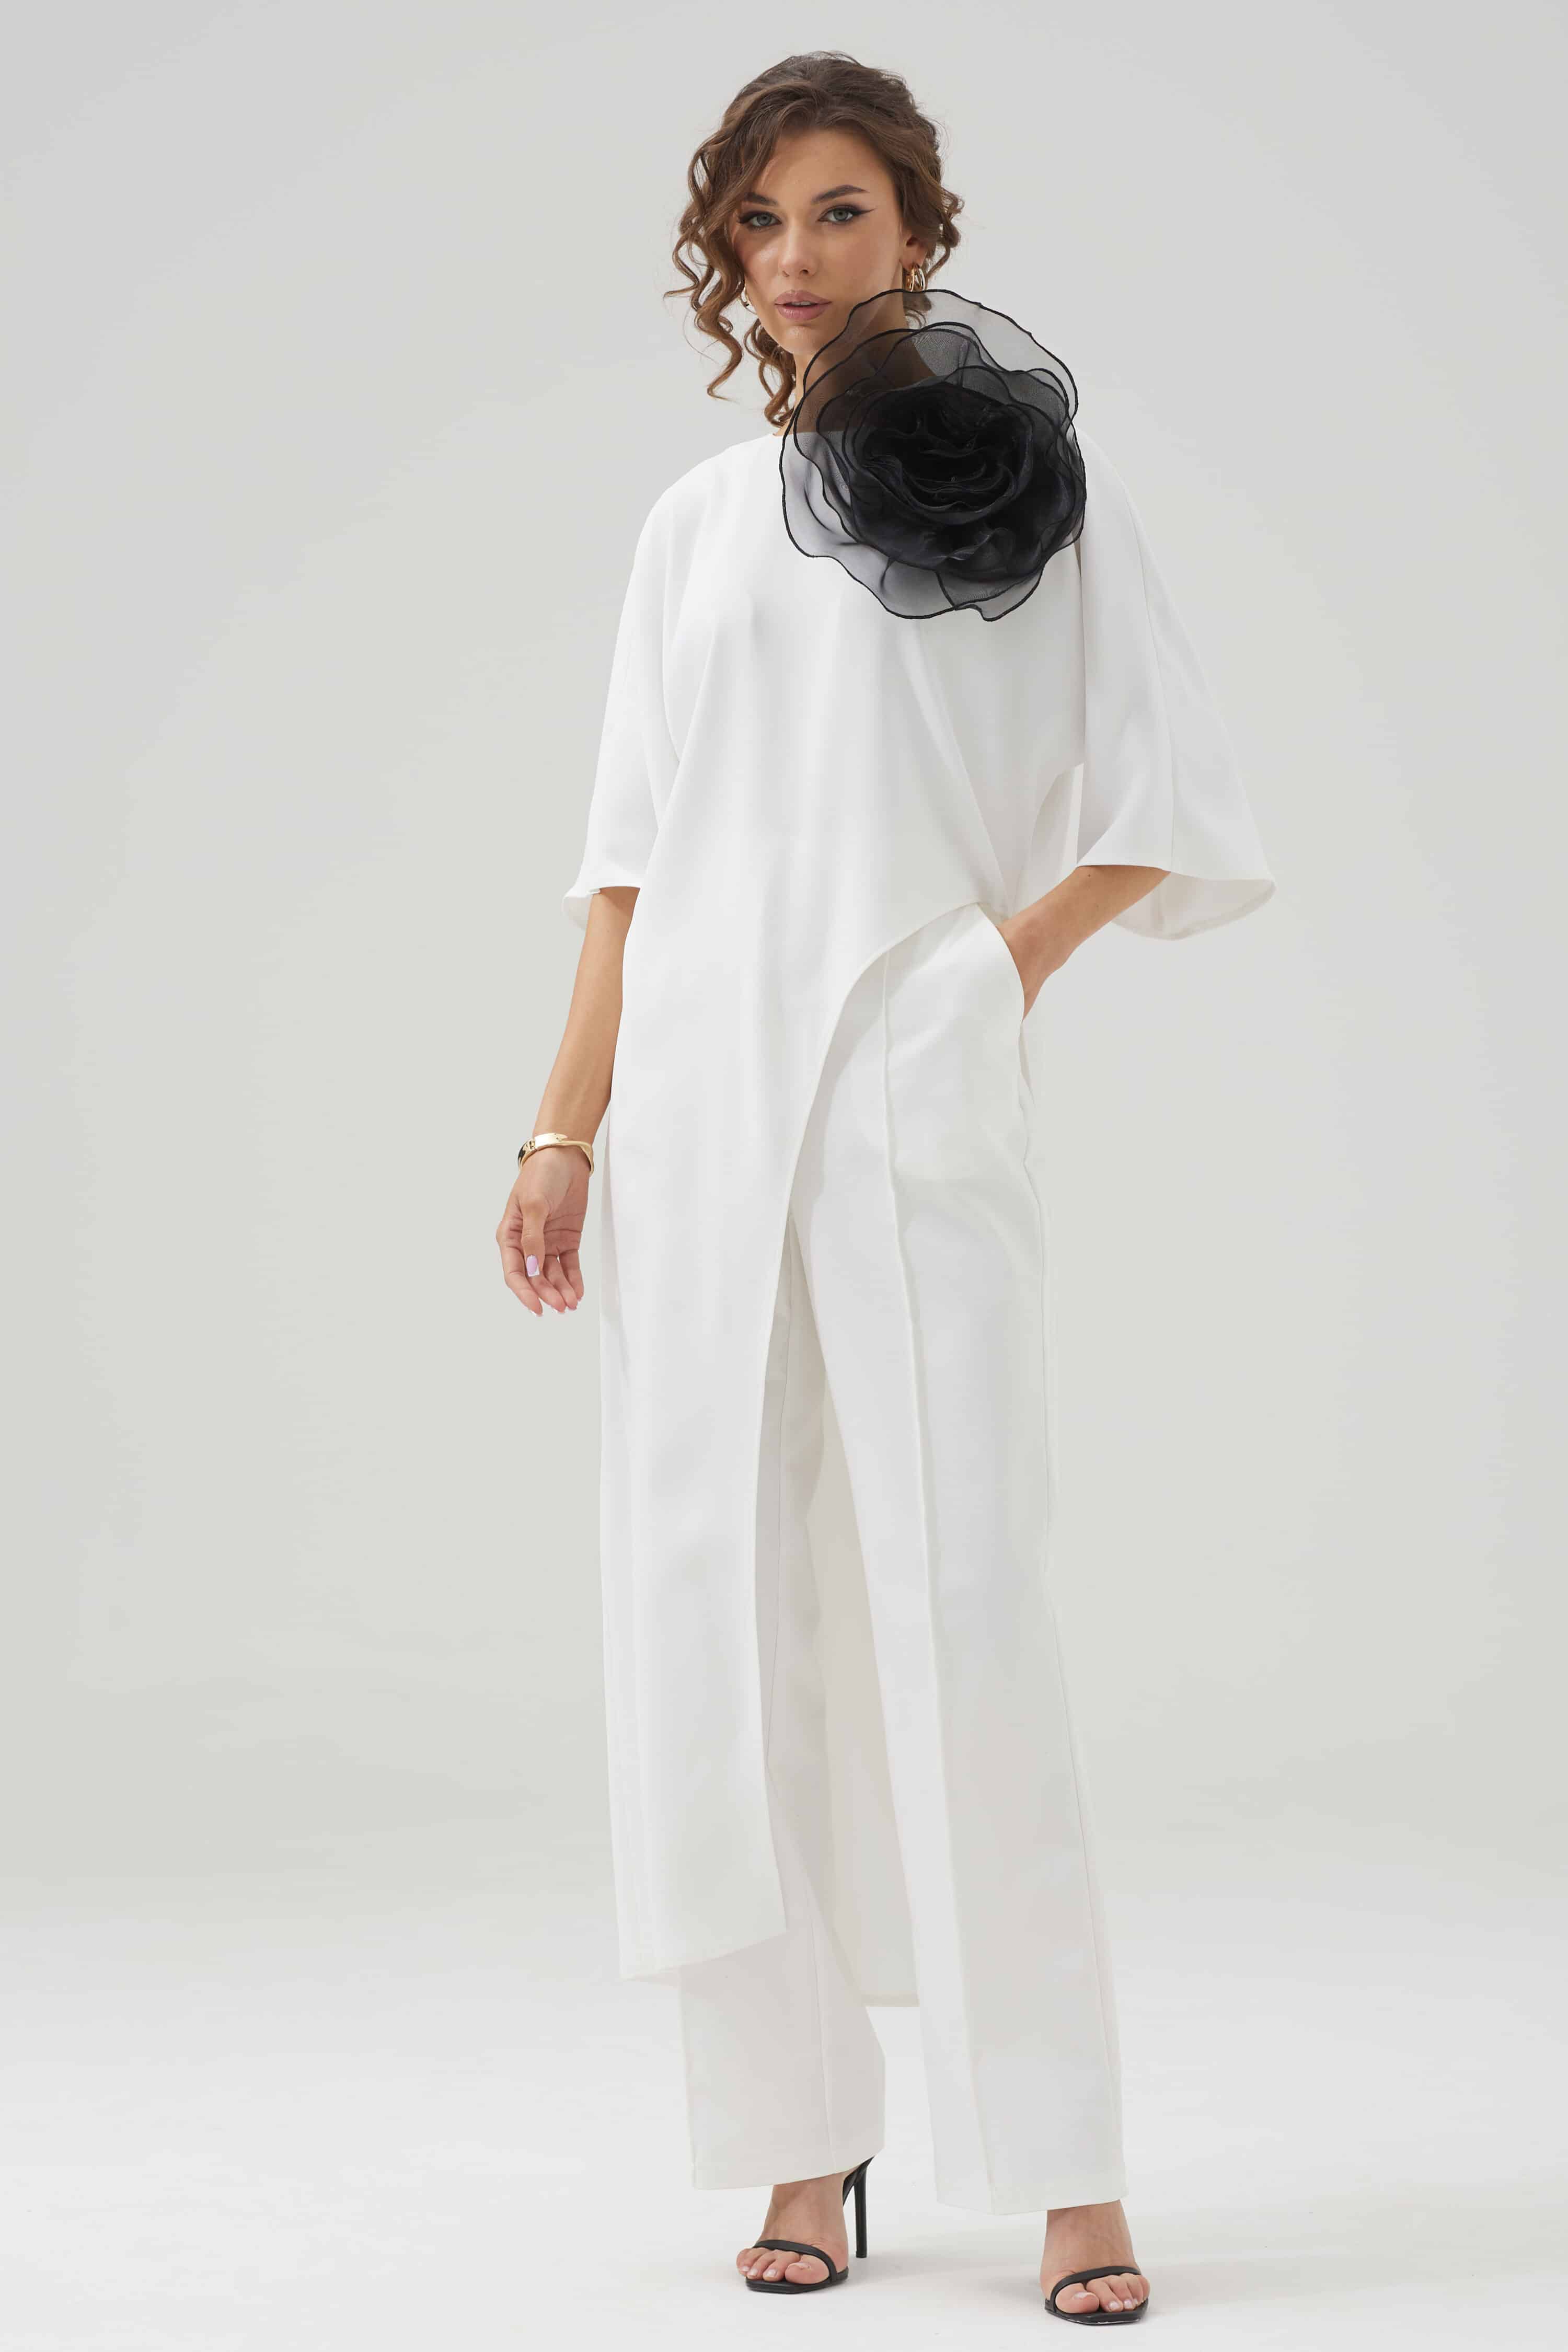 Купить блузку женскую размер 44-60 Люше 3792 белая